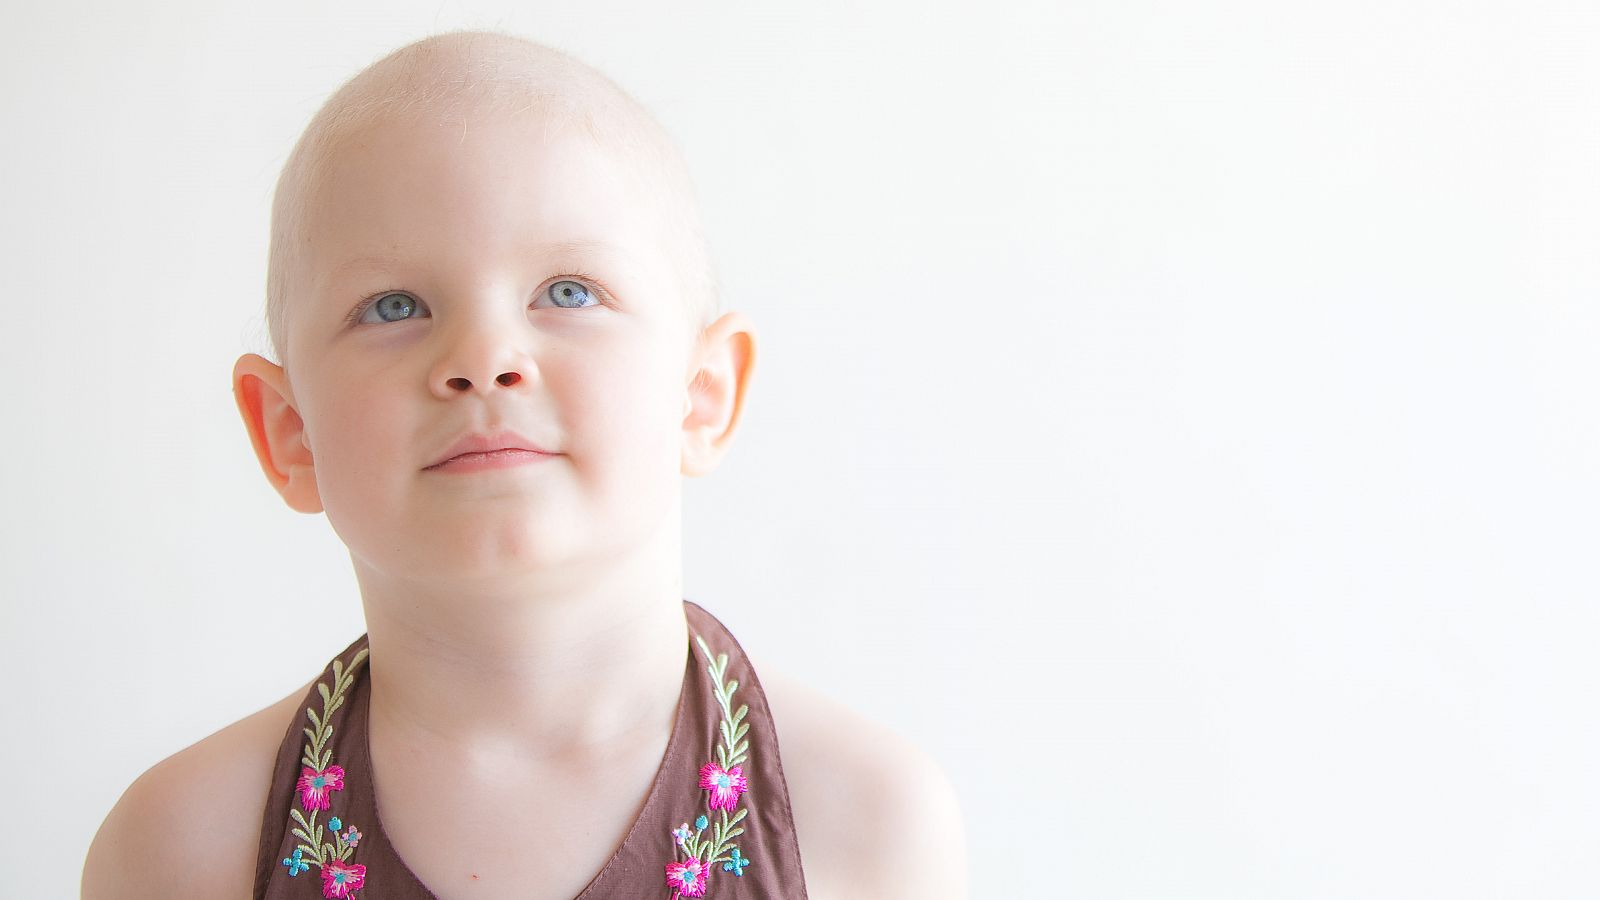 "La inversión en investigación para cáncer infantil es muy pequeña"